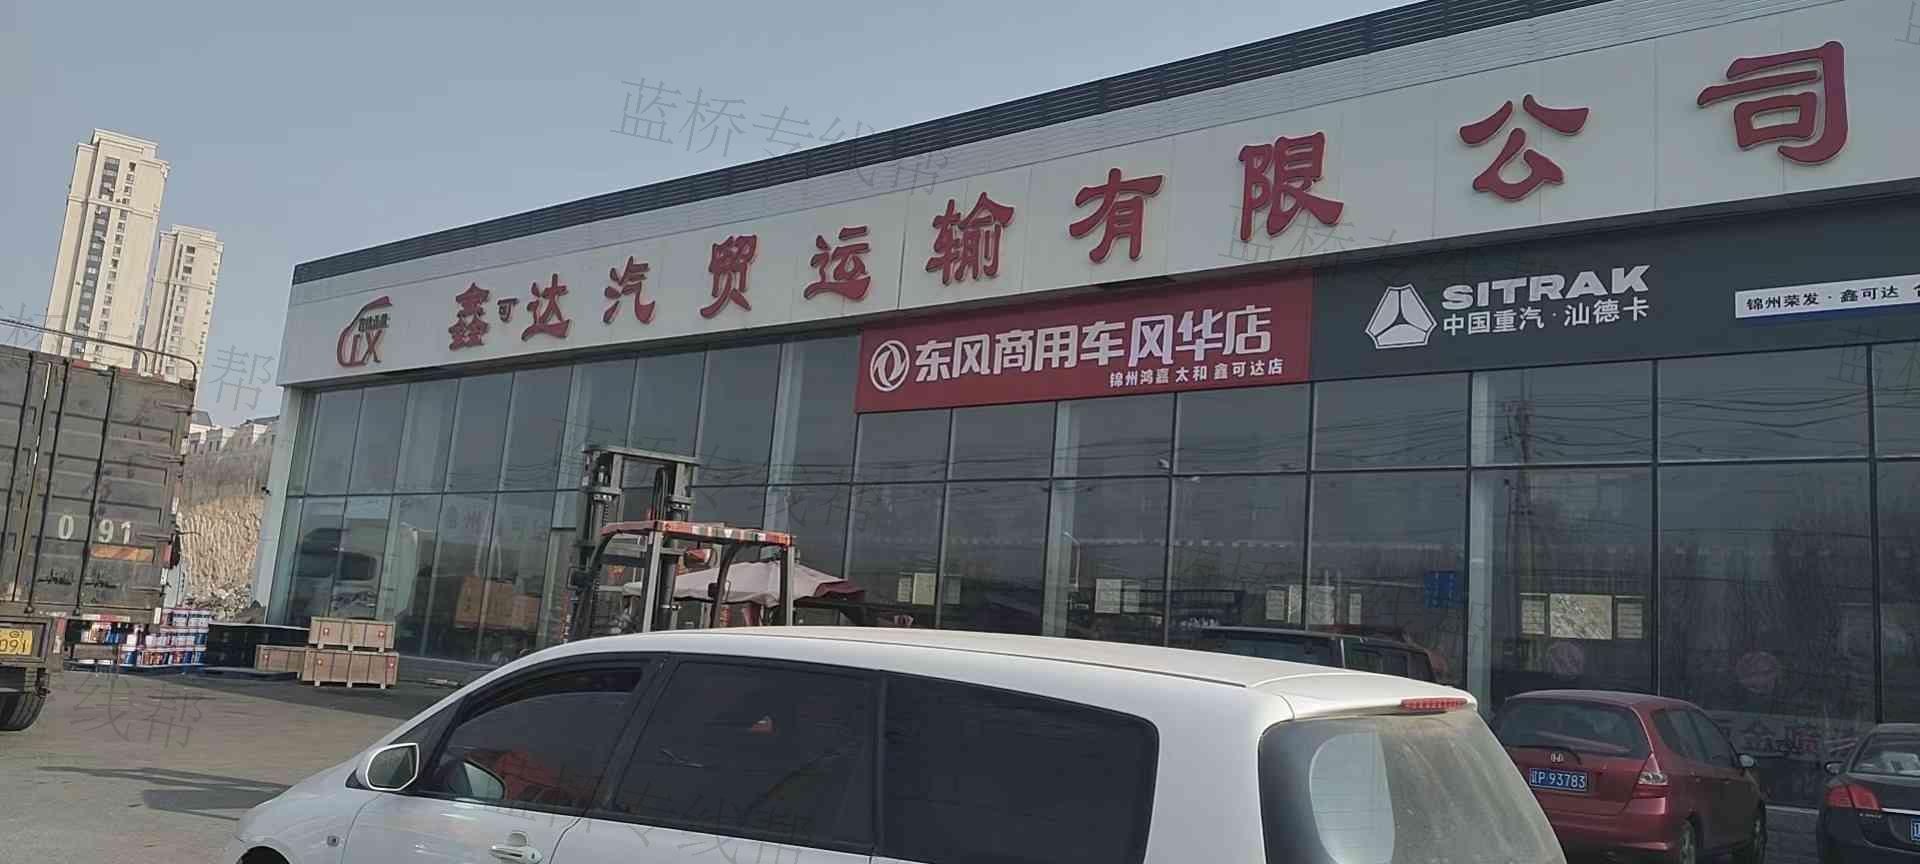 锦州鑫可达汽车贸易运输有限公司